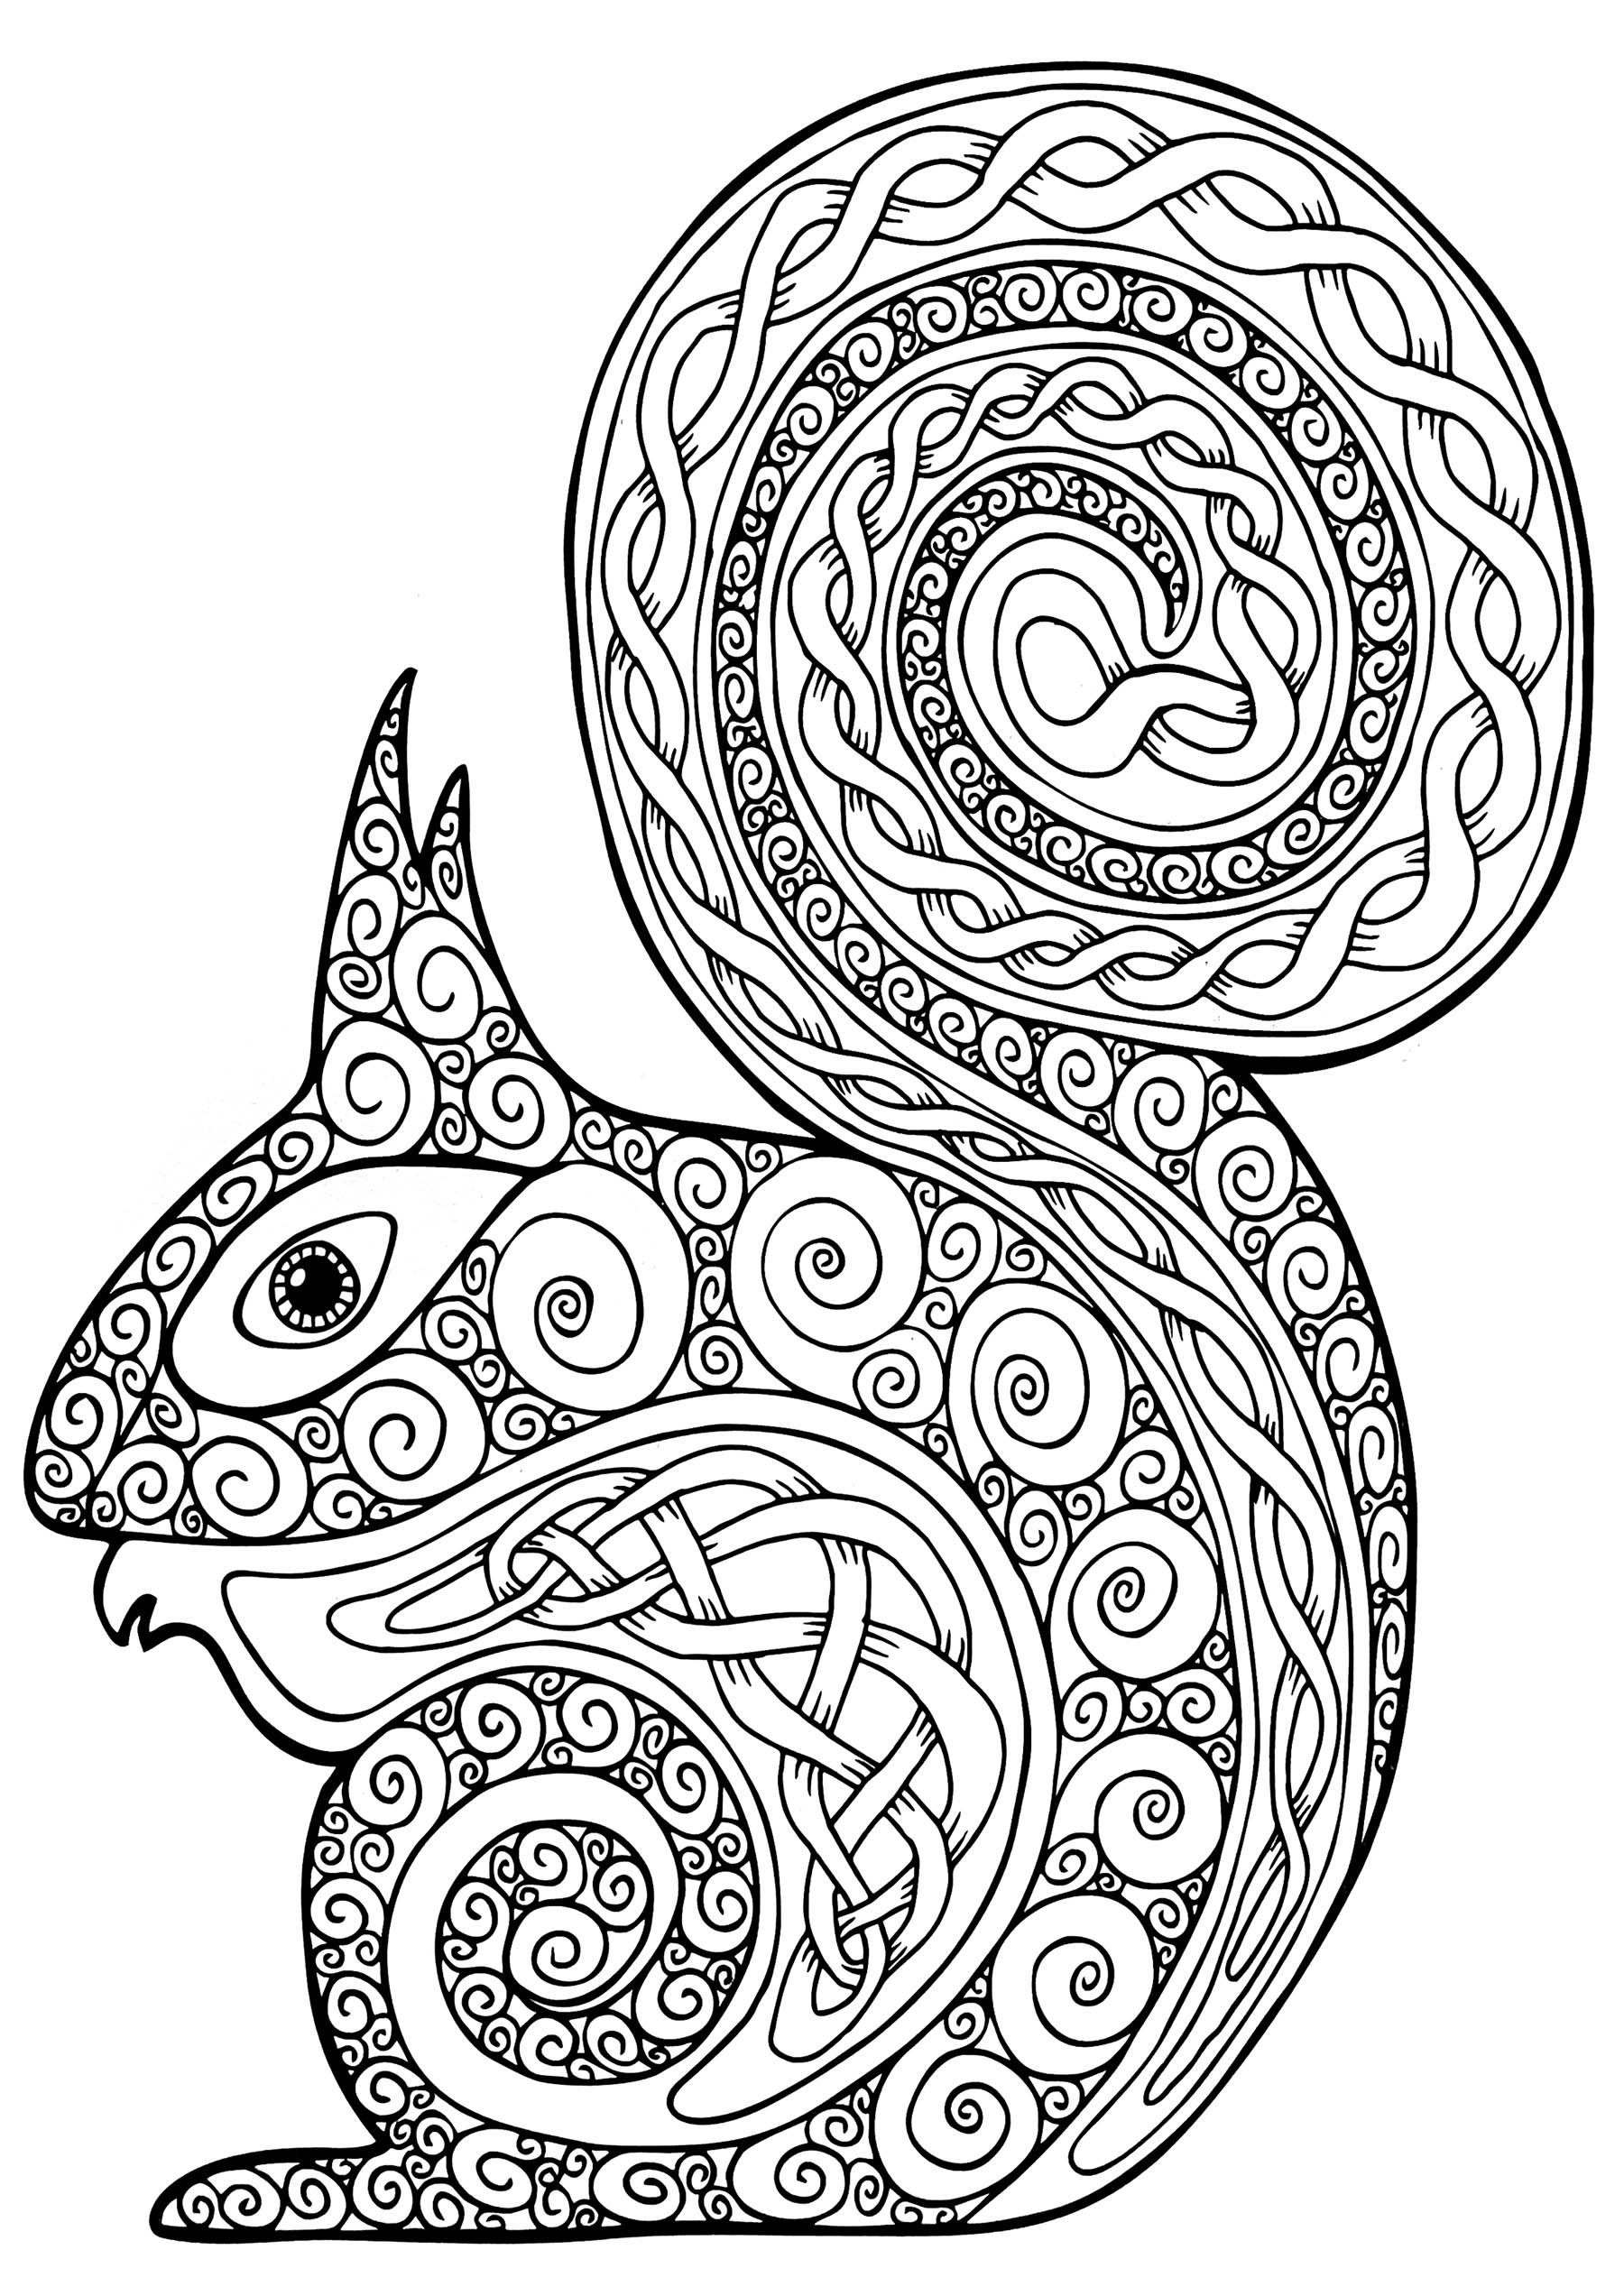 Joli écureuil à colorier, plein de motifs entrelacés, Artiste : Art'Isabelle